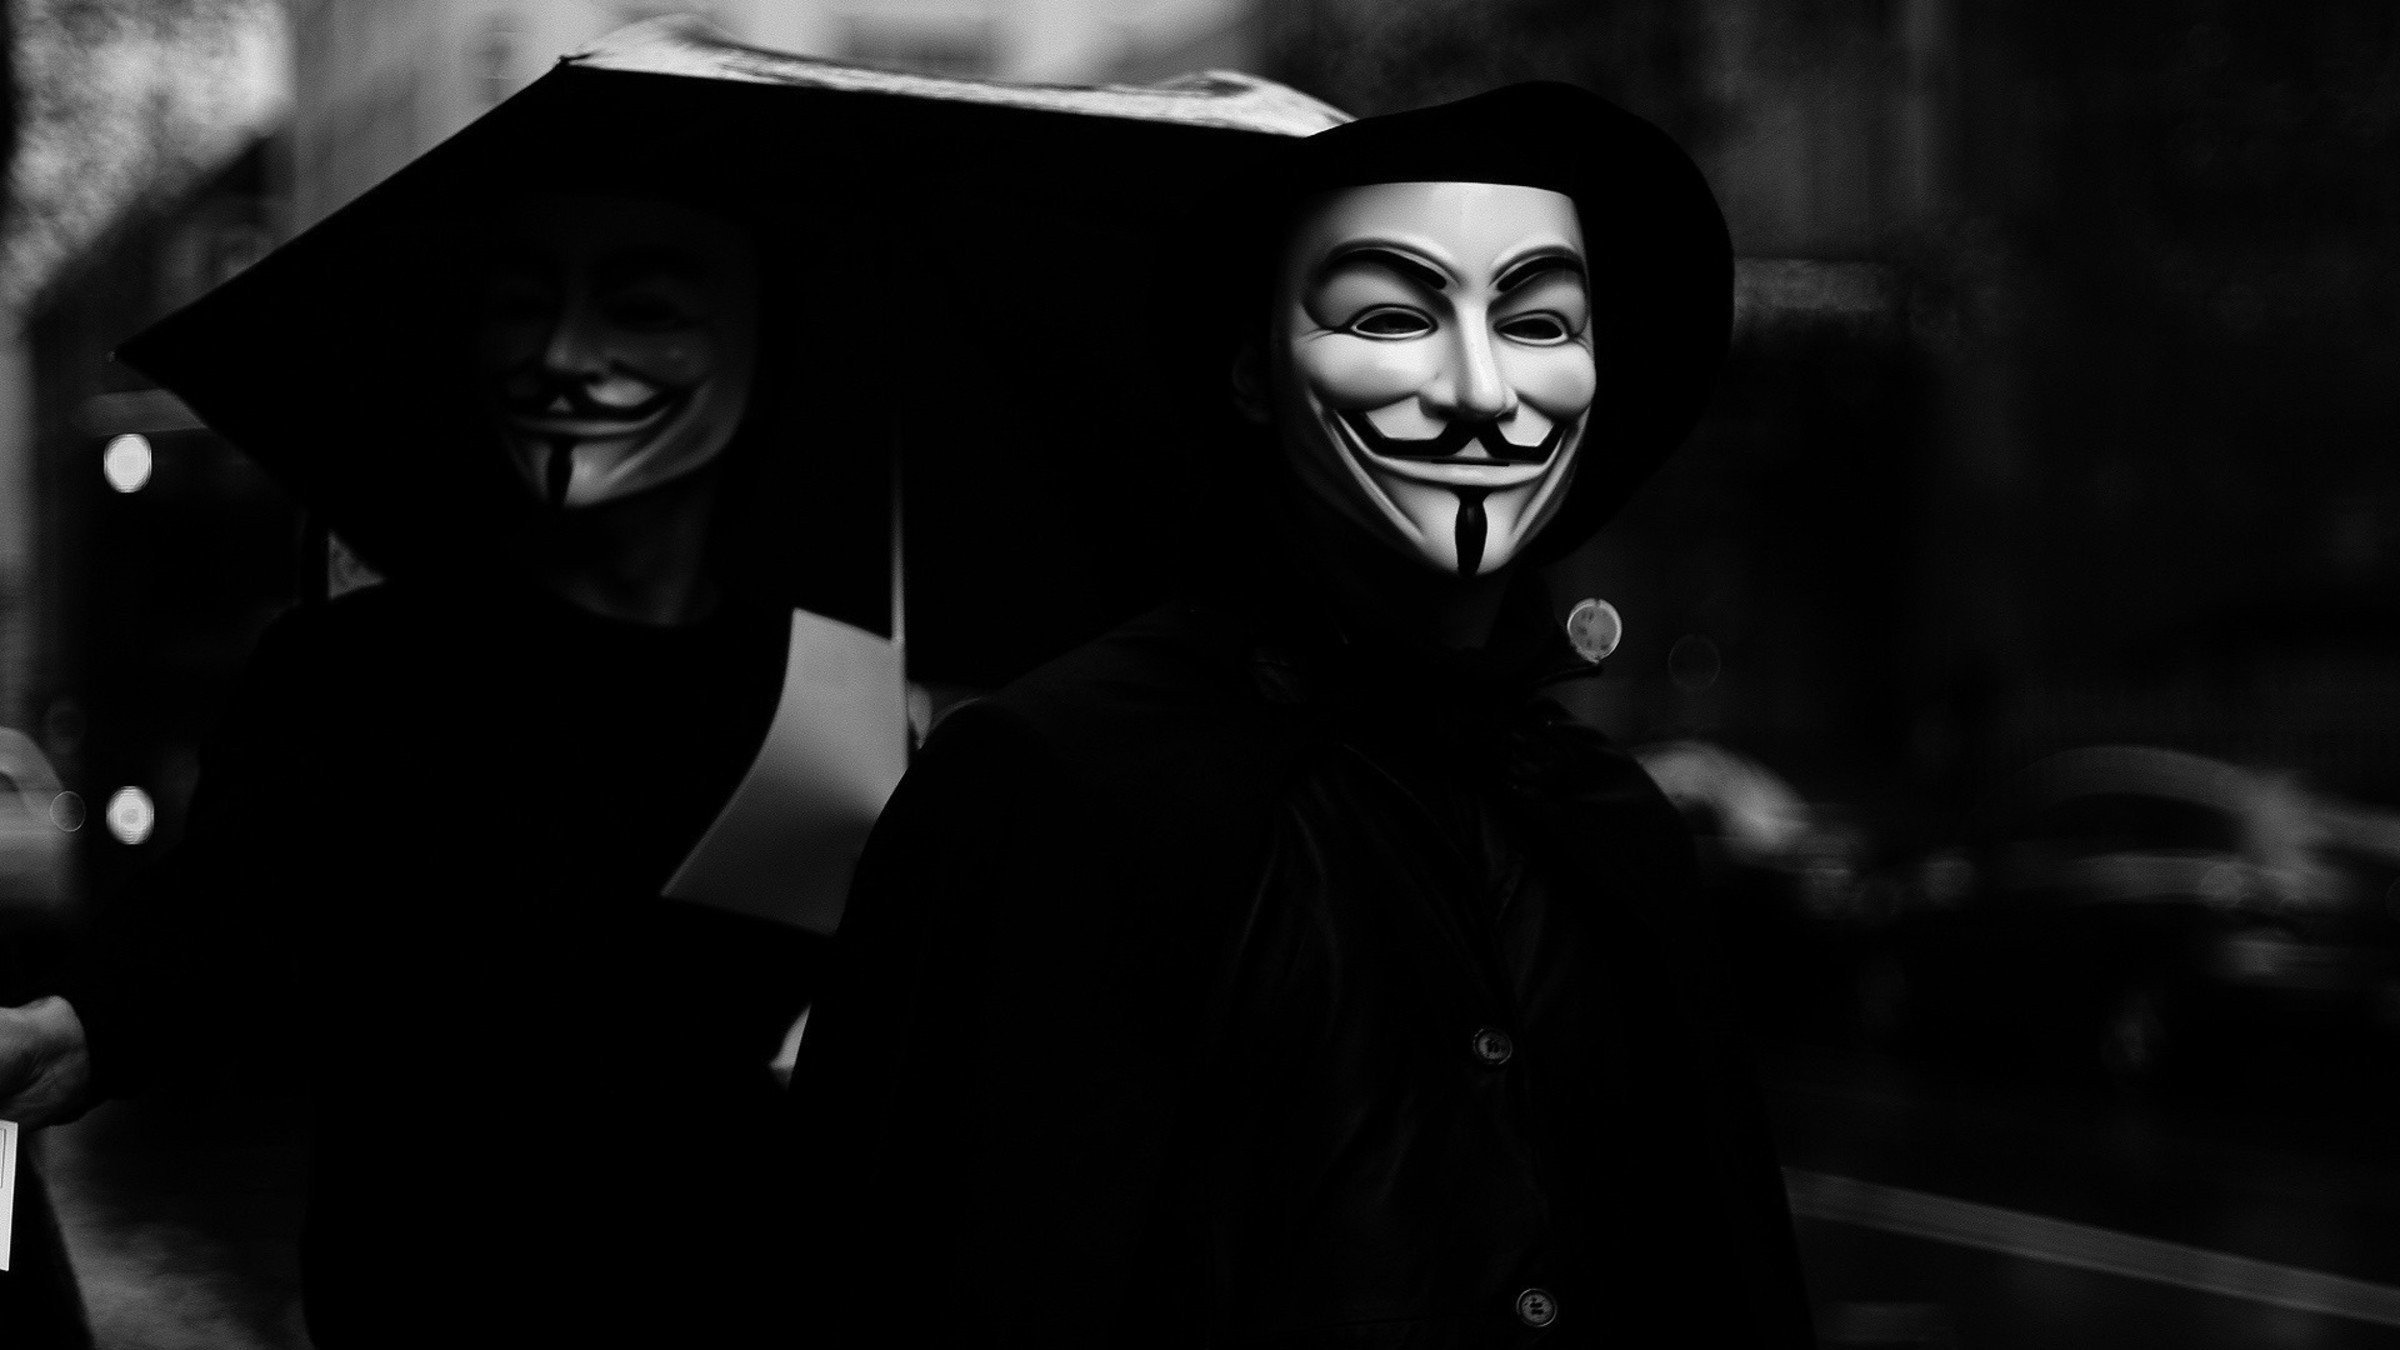 hacking, Anonymous, V for Vendetta Wallpaper